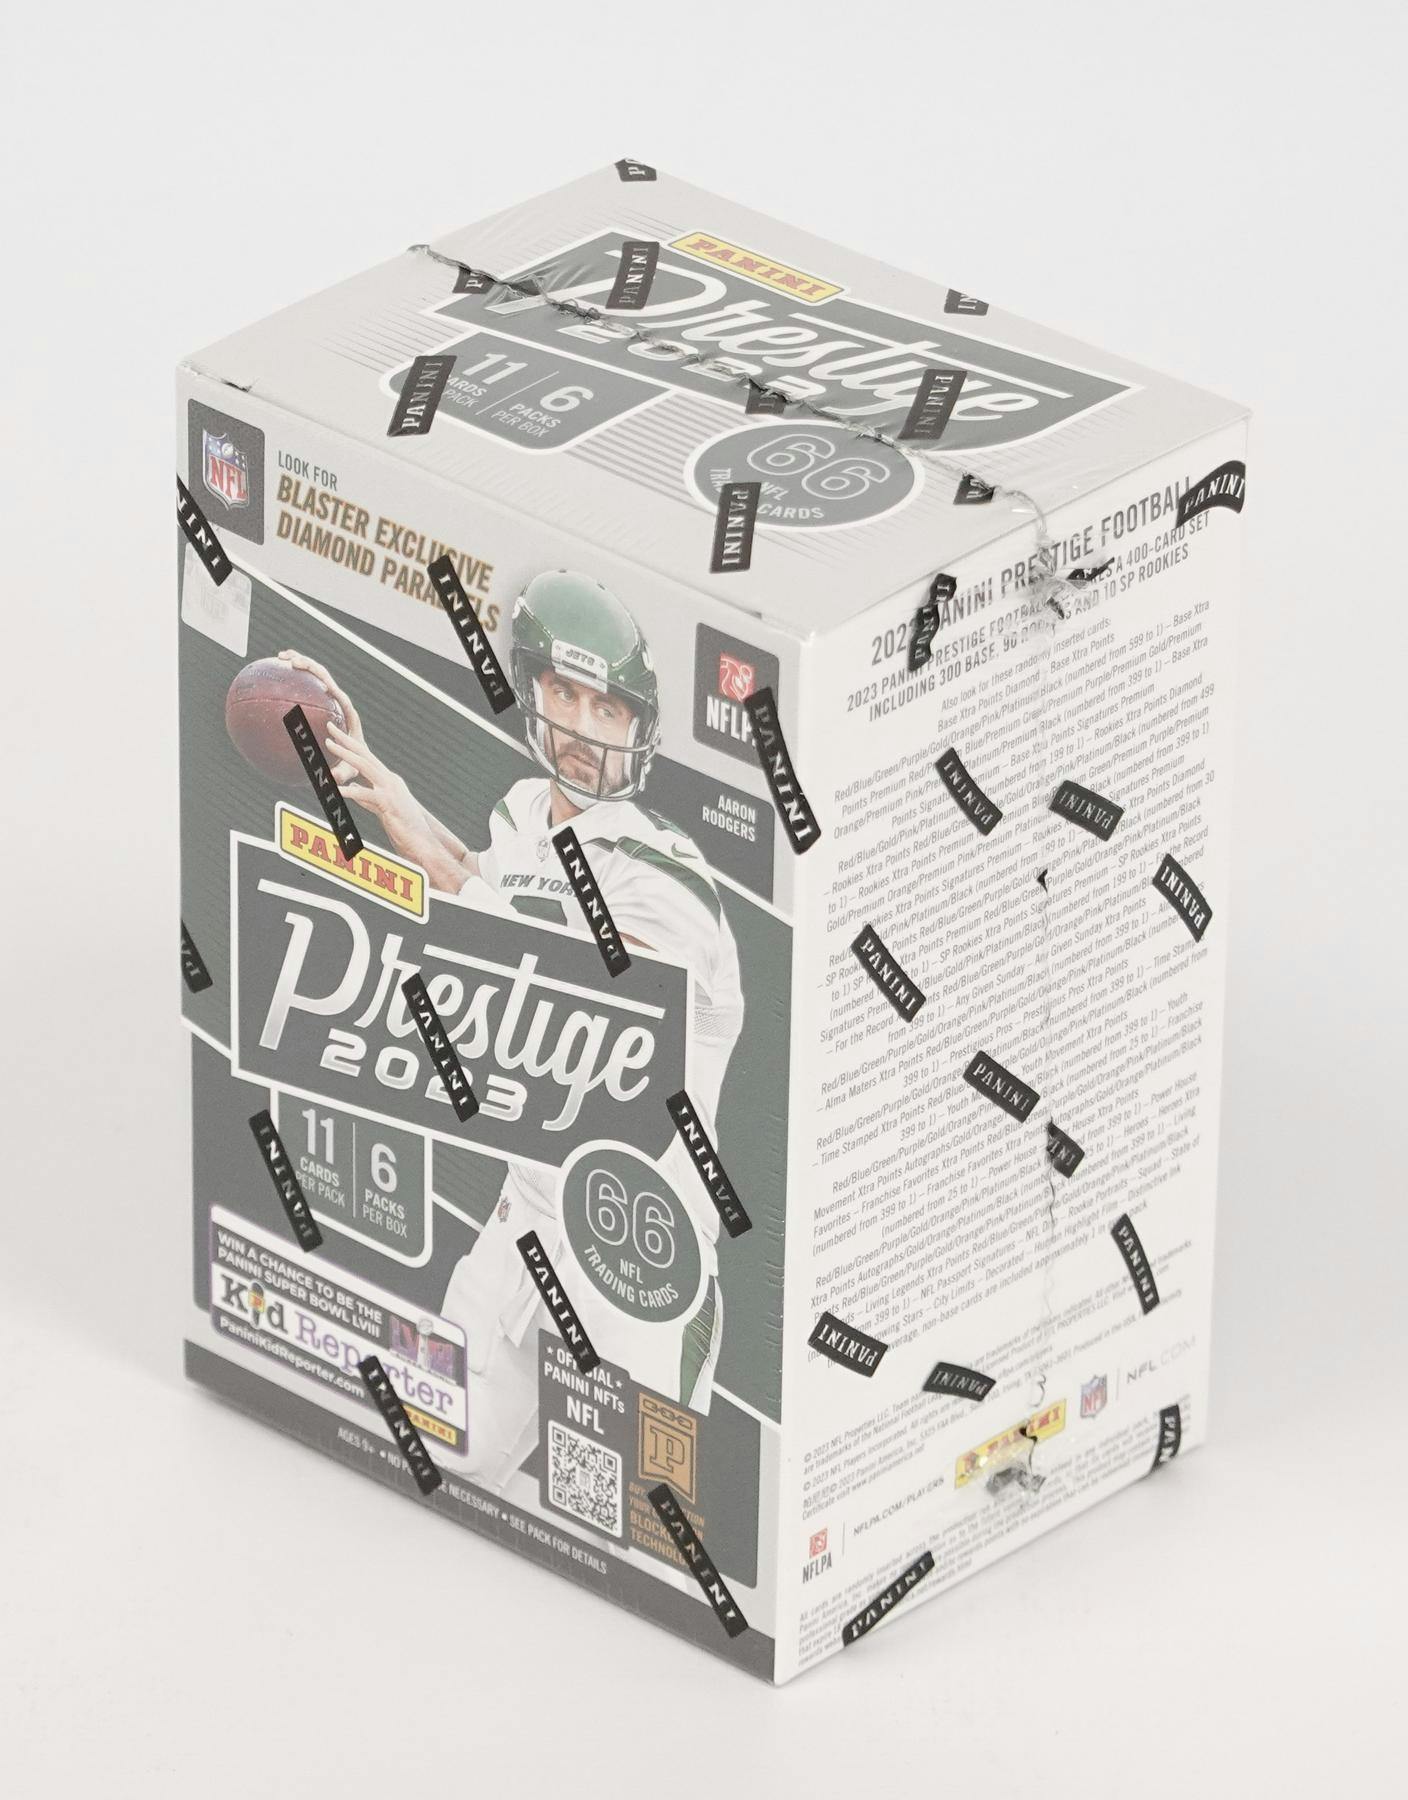 2023 Panini Prestige Football Mega Box Panini